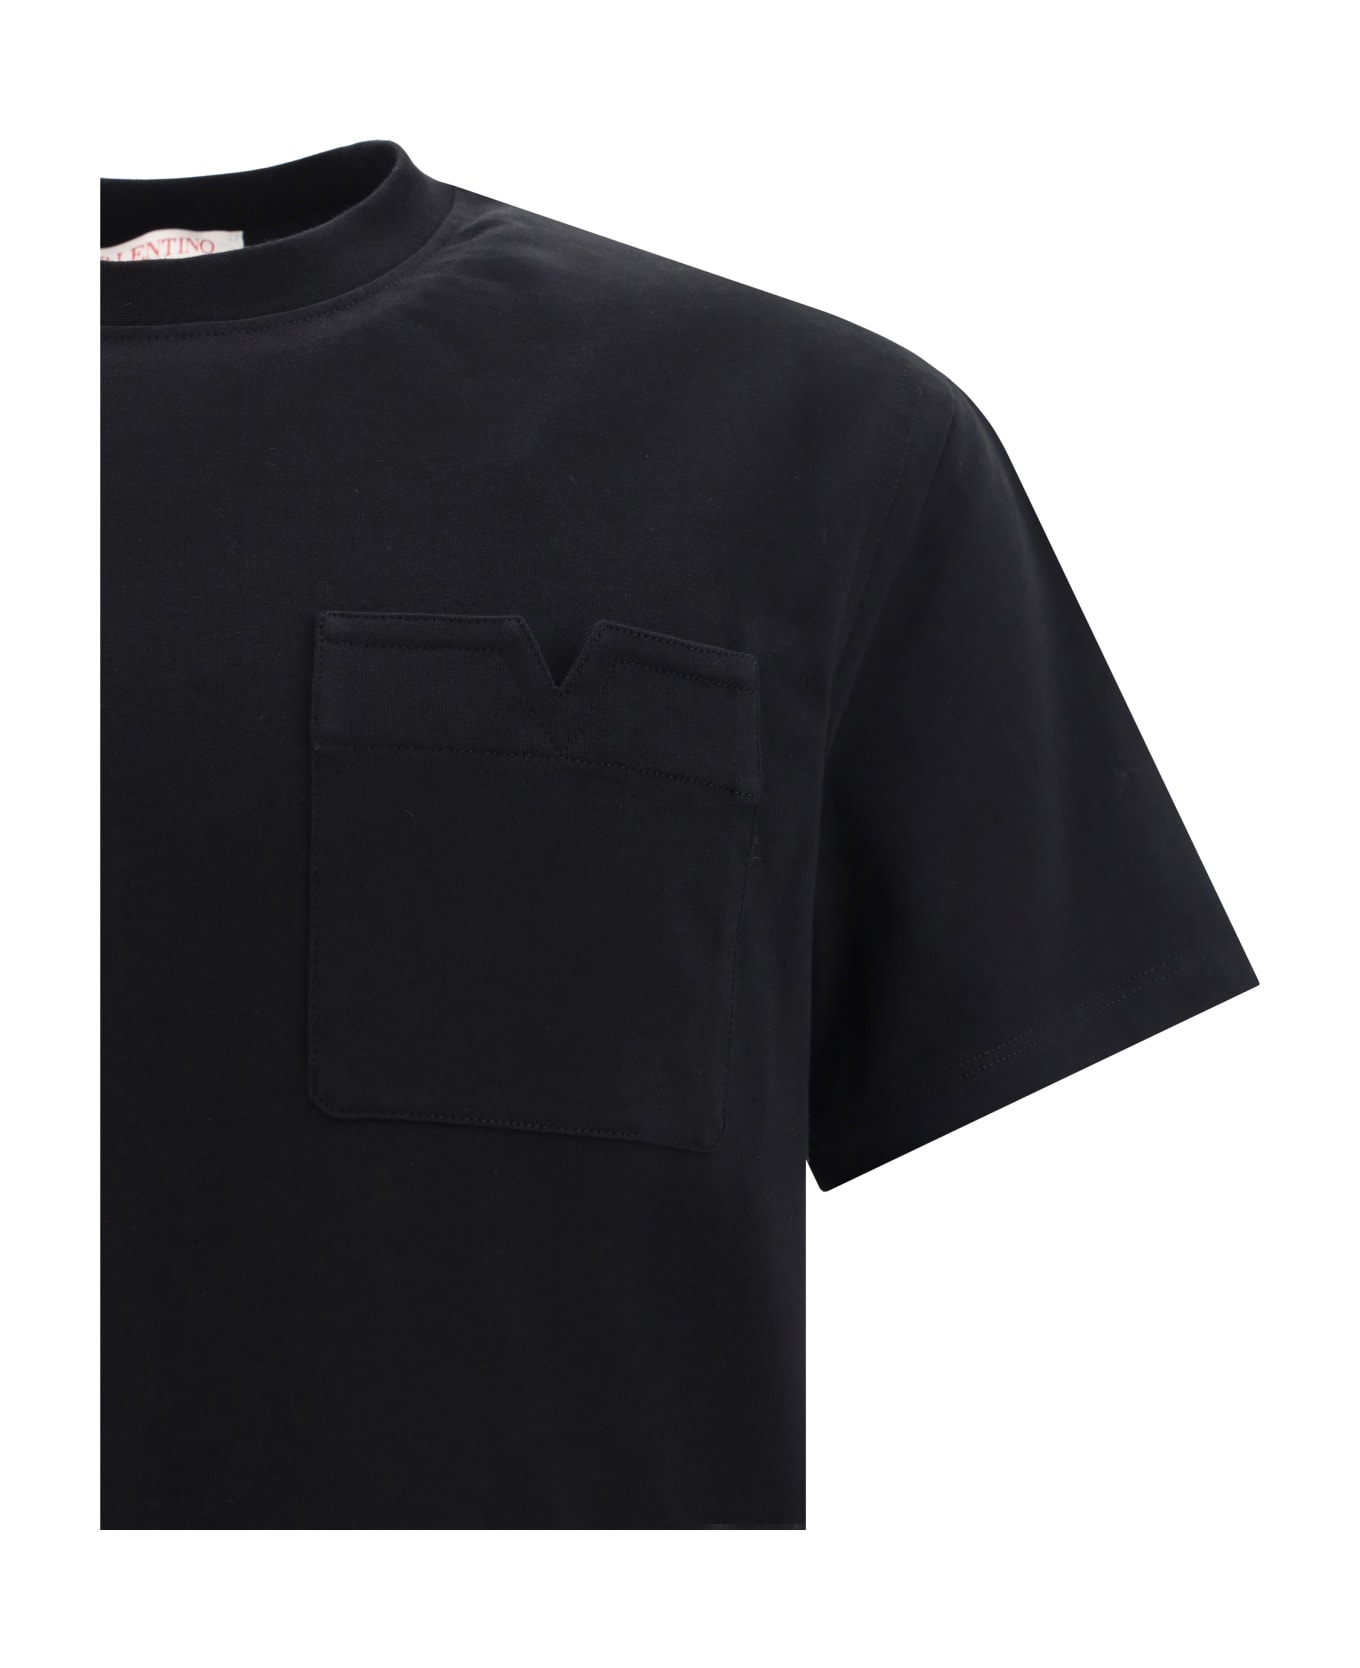 Valentino T-shirt - Black シャツ